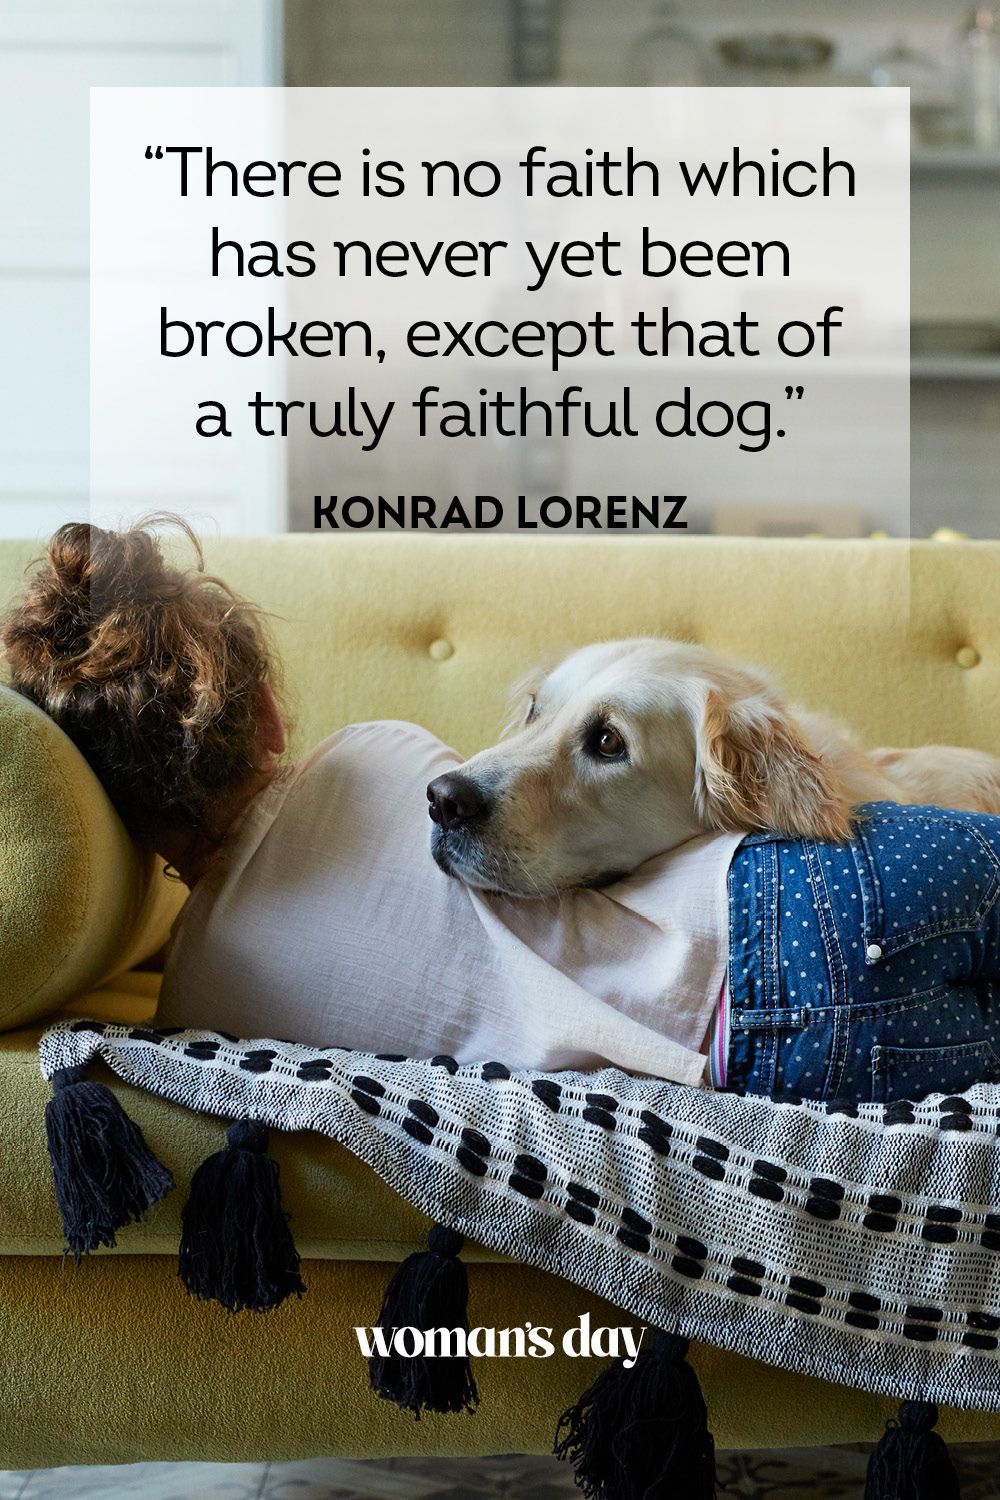 speech on dogs are most faithful animals